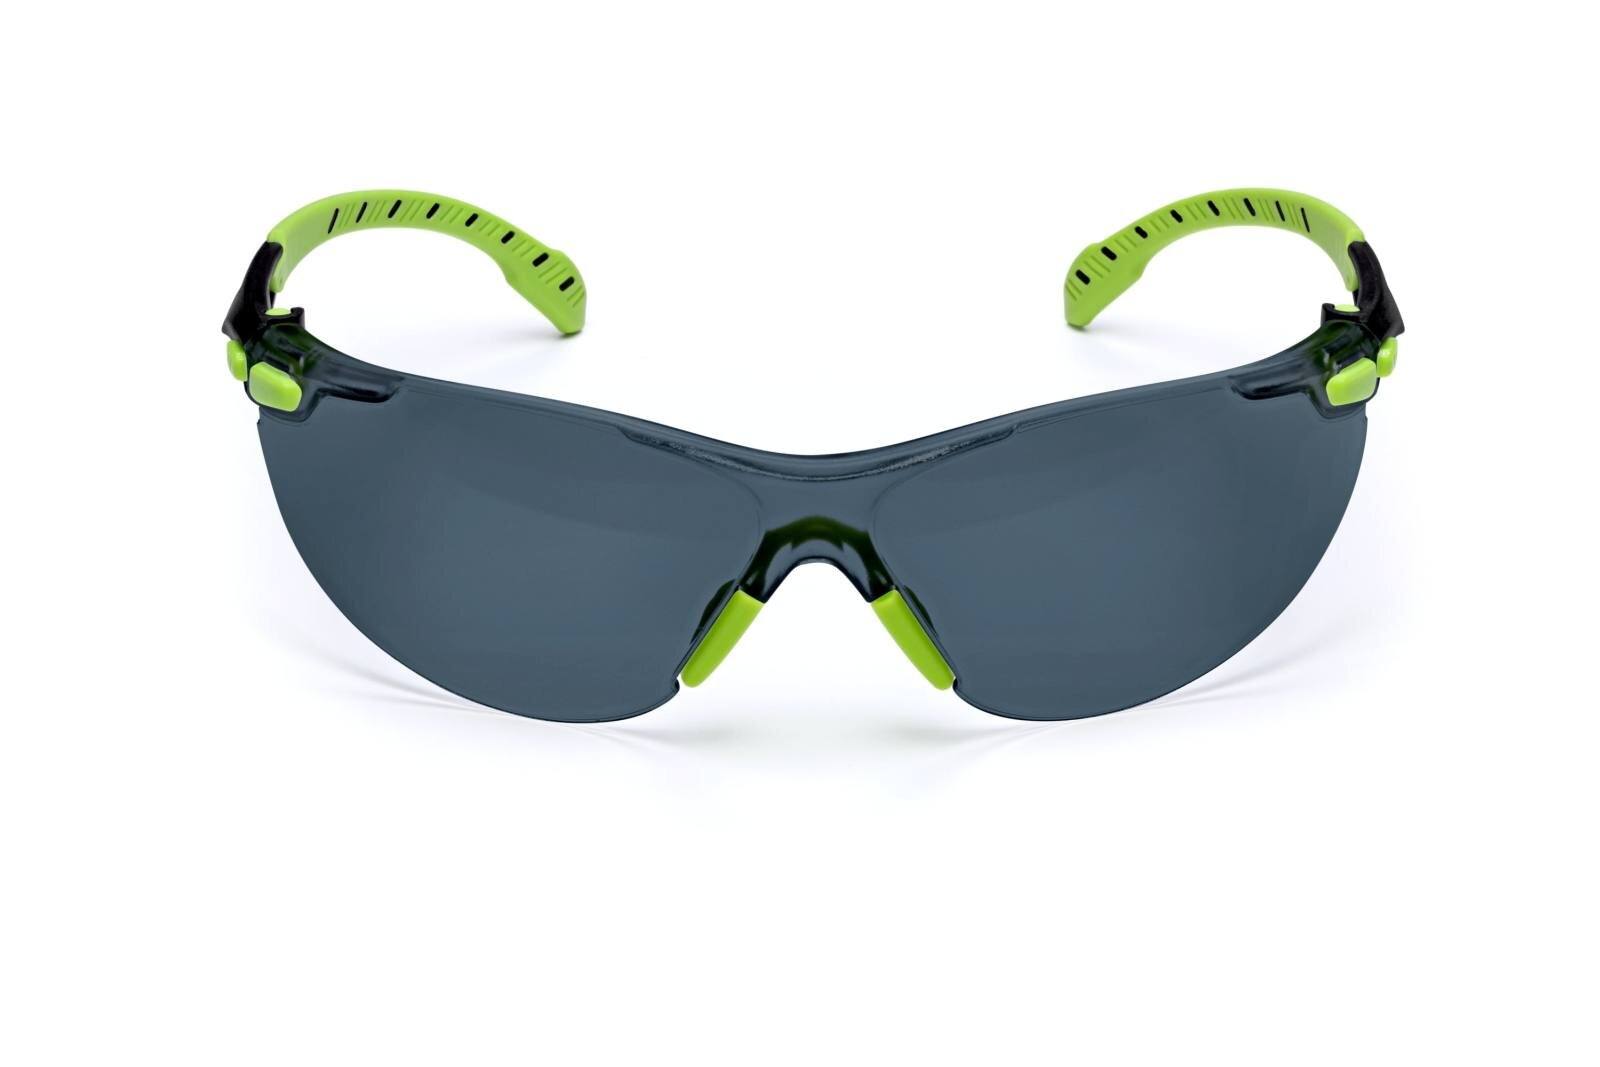 3M Solus 1000 Schutzbrille, grün/schwarze Bügel, Scotchgard Anti-Fog-/Antikratz-Beschichtung (K&N), graue Scheibe, S1202SGAF-EU